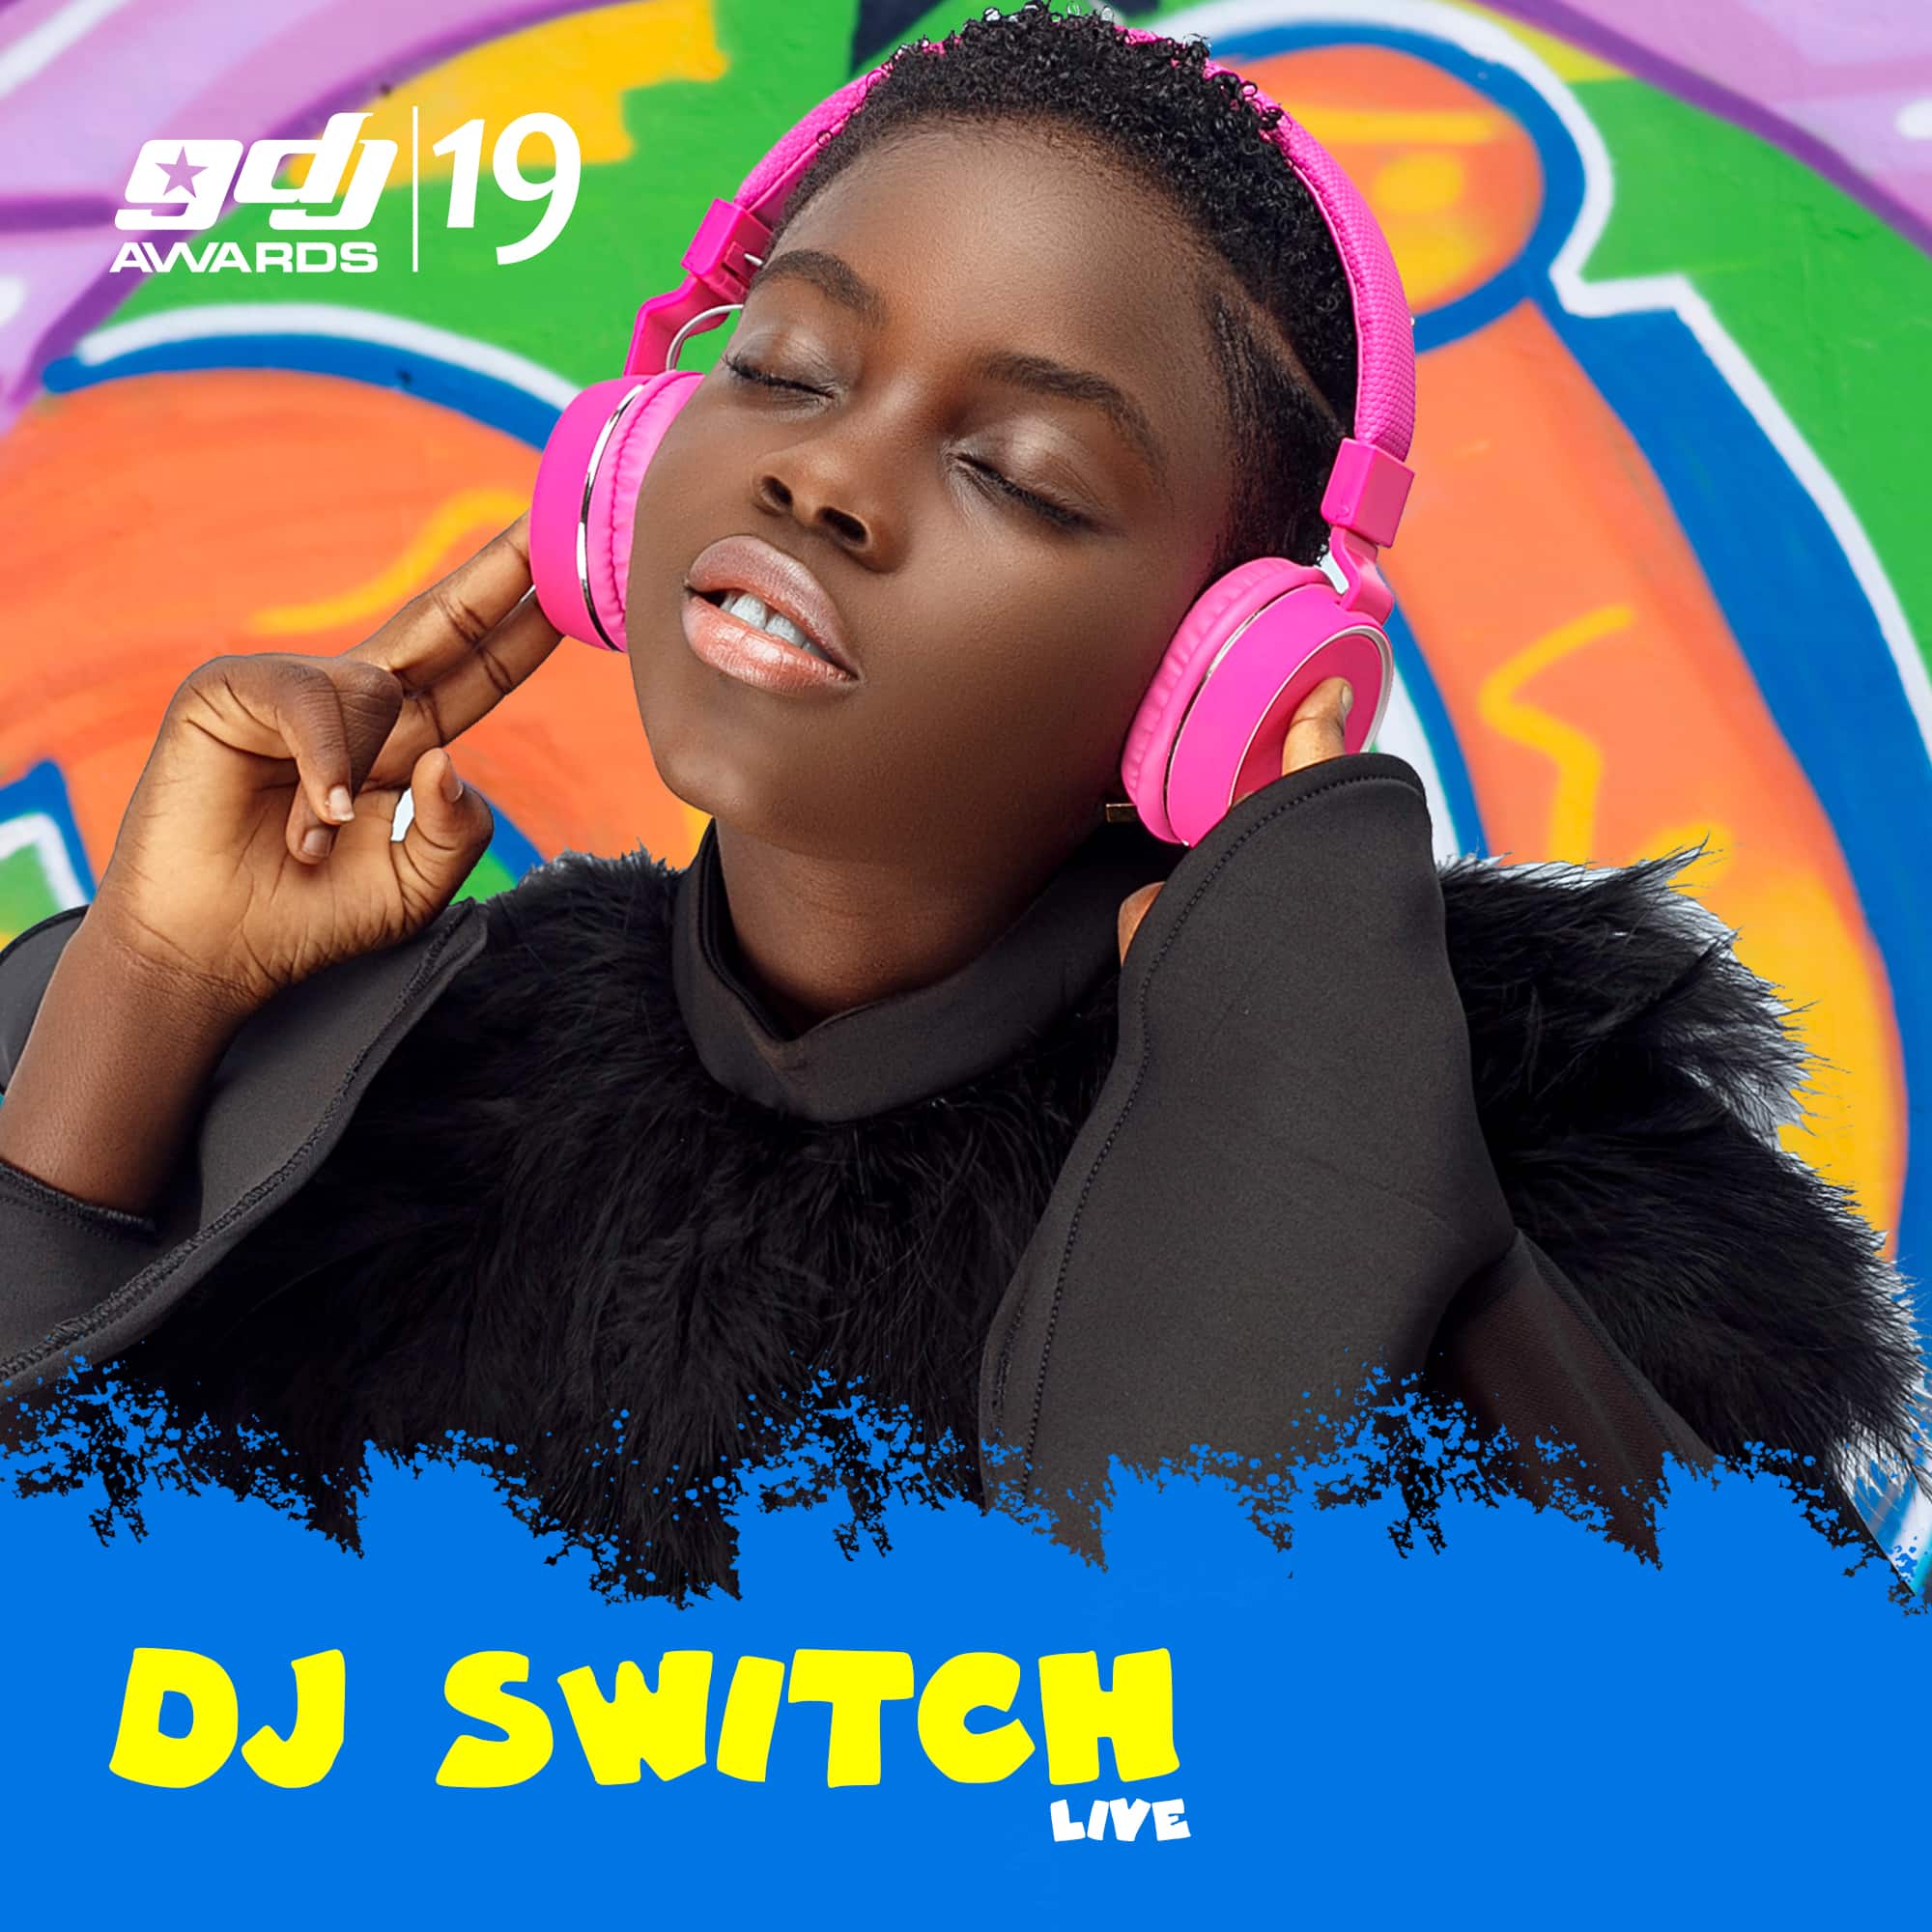 Dj Switch Wins Ghana DJ Awards 2019